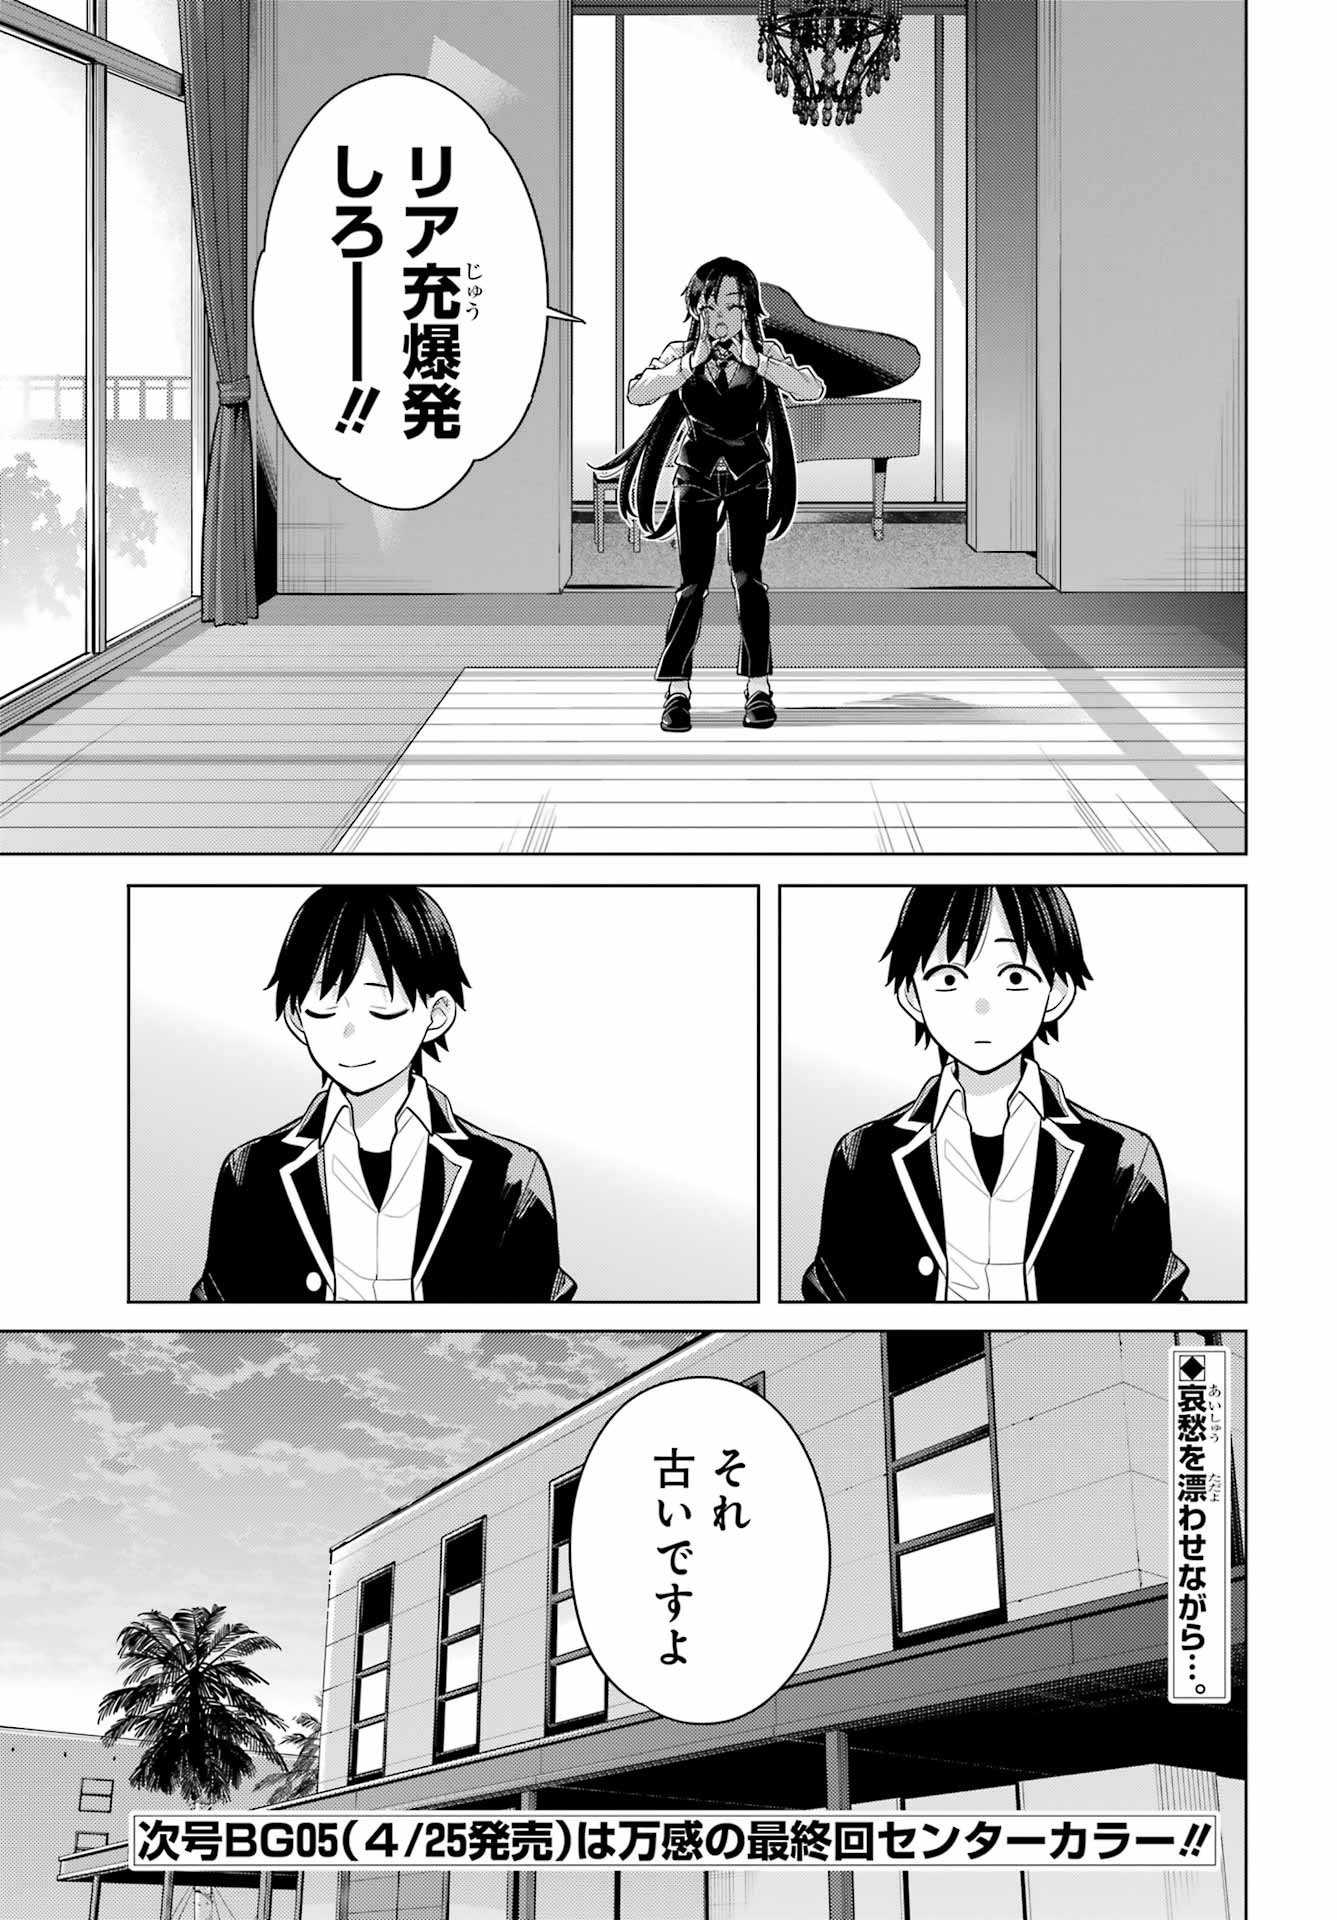 Yahari Ore no Seishun Rabukome wa Machigatte Iru. - Monologue - Chapter 114 - Page 25